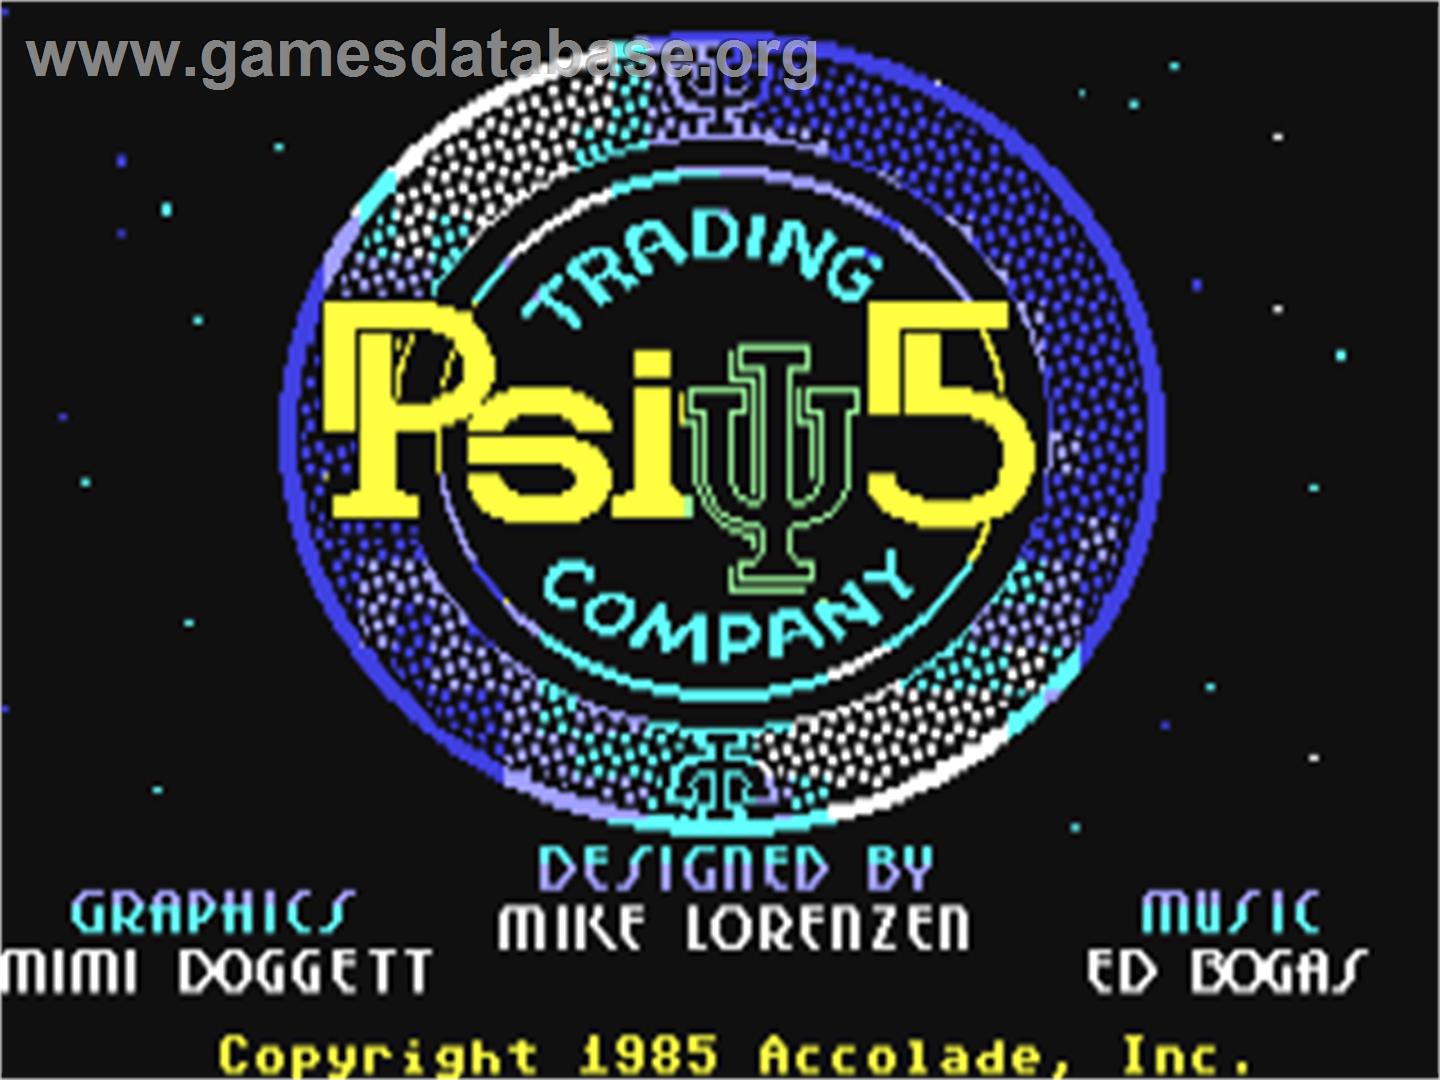 Psi-5 Trading Company - Commodore 64 - Artwork - Title Screen